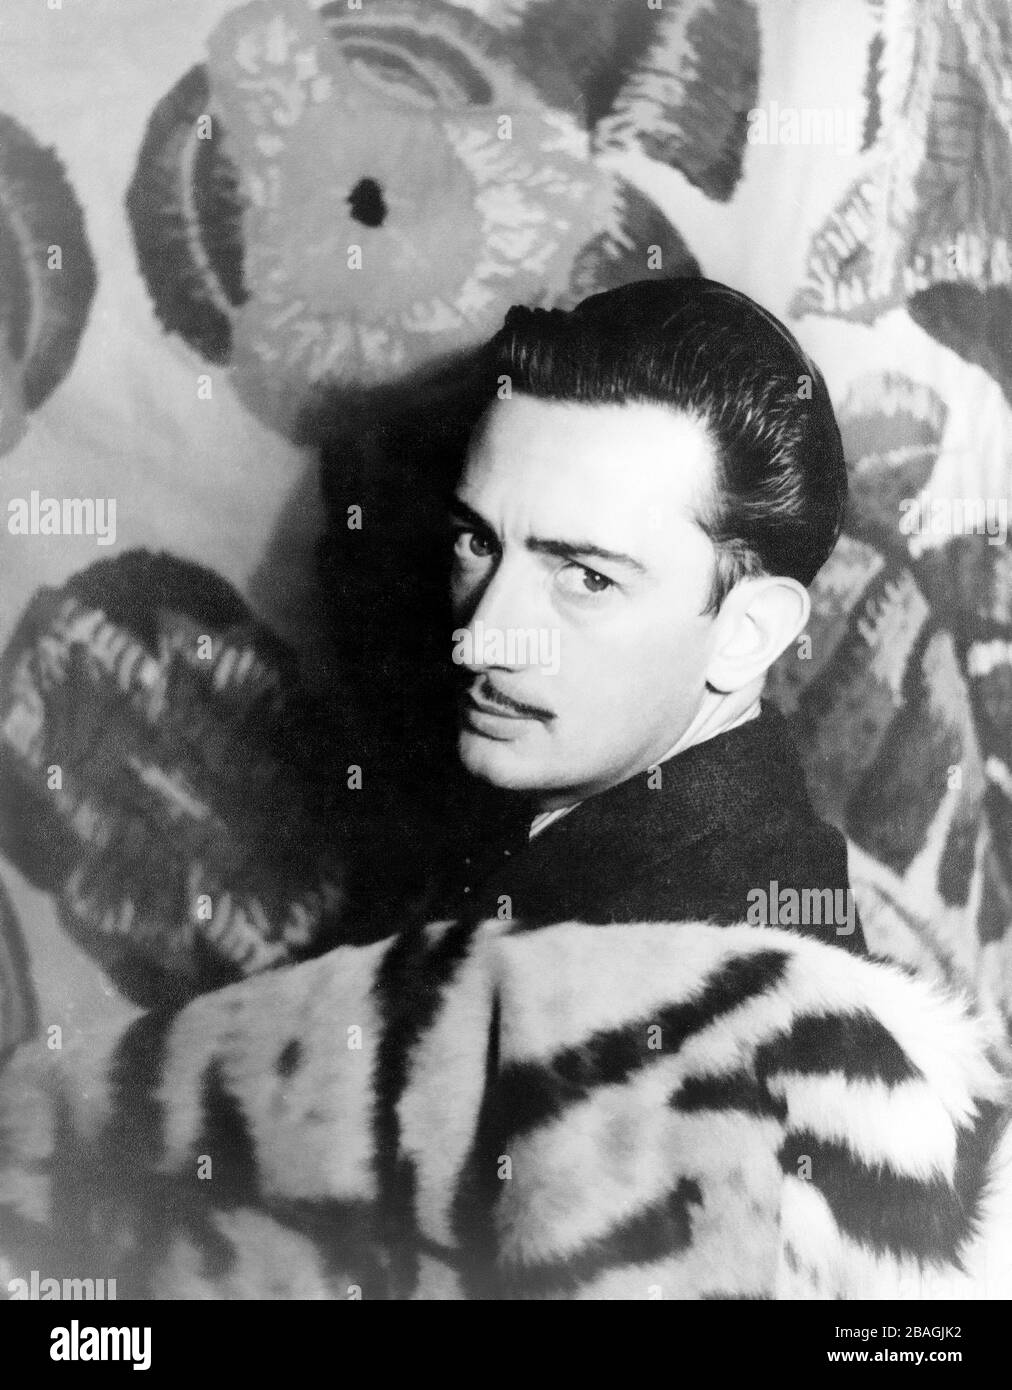 Salvador Dalí (1904 – 1989) artista surrealista spagnolo Foto Stock